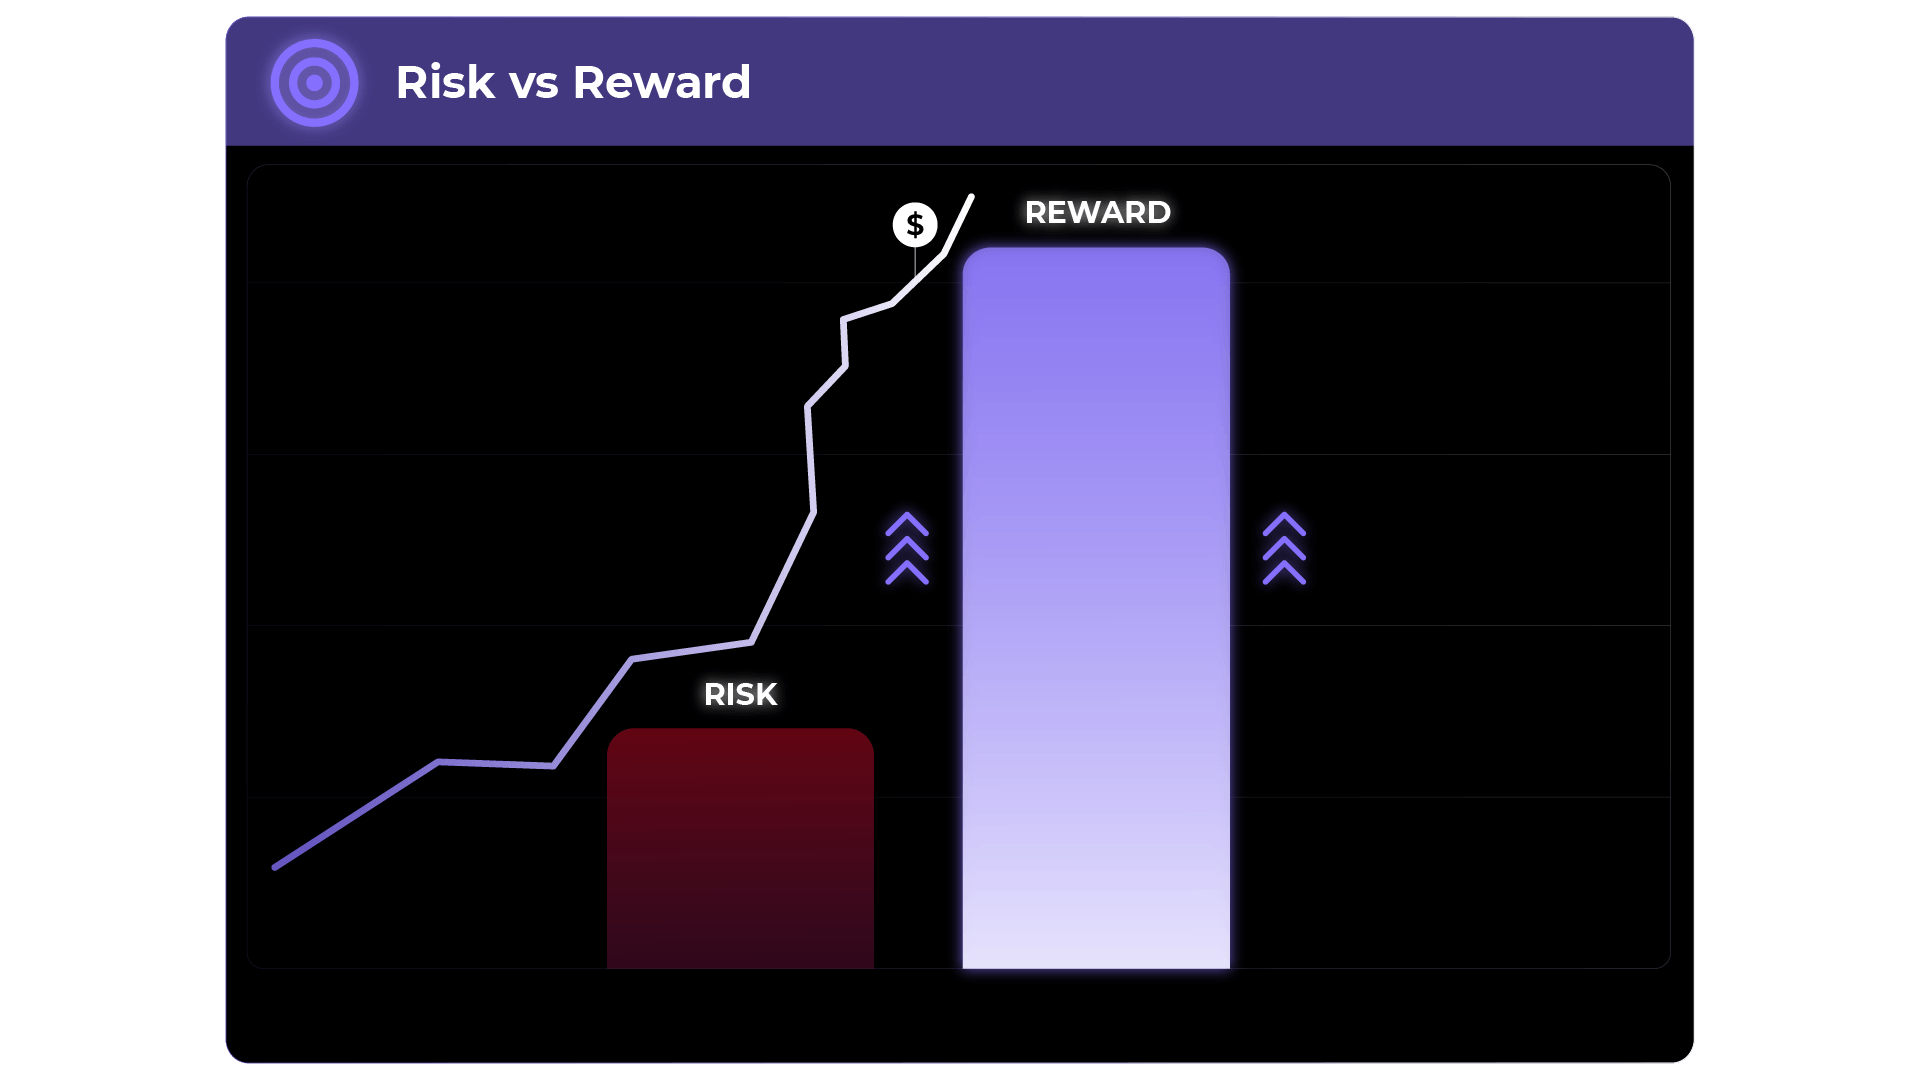 Risk vs reward image